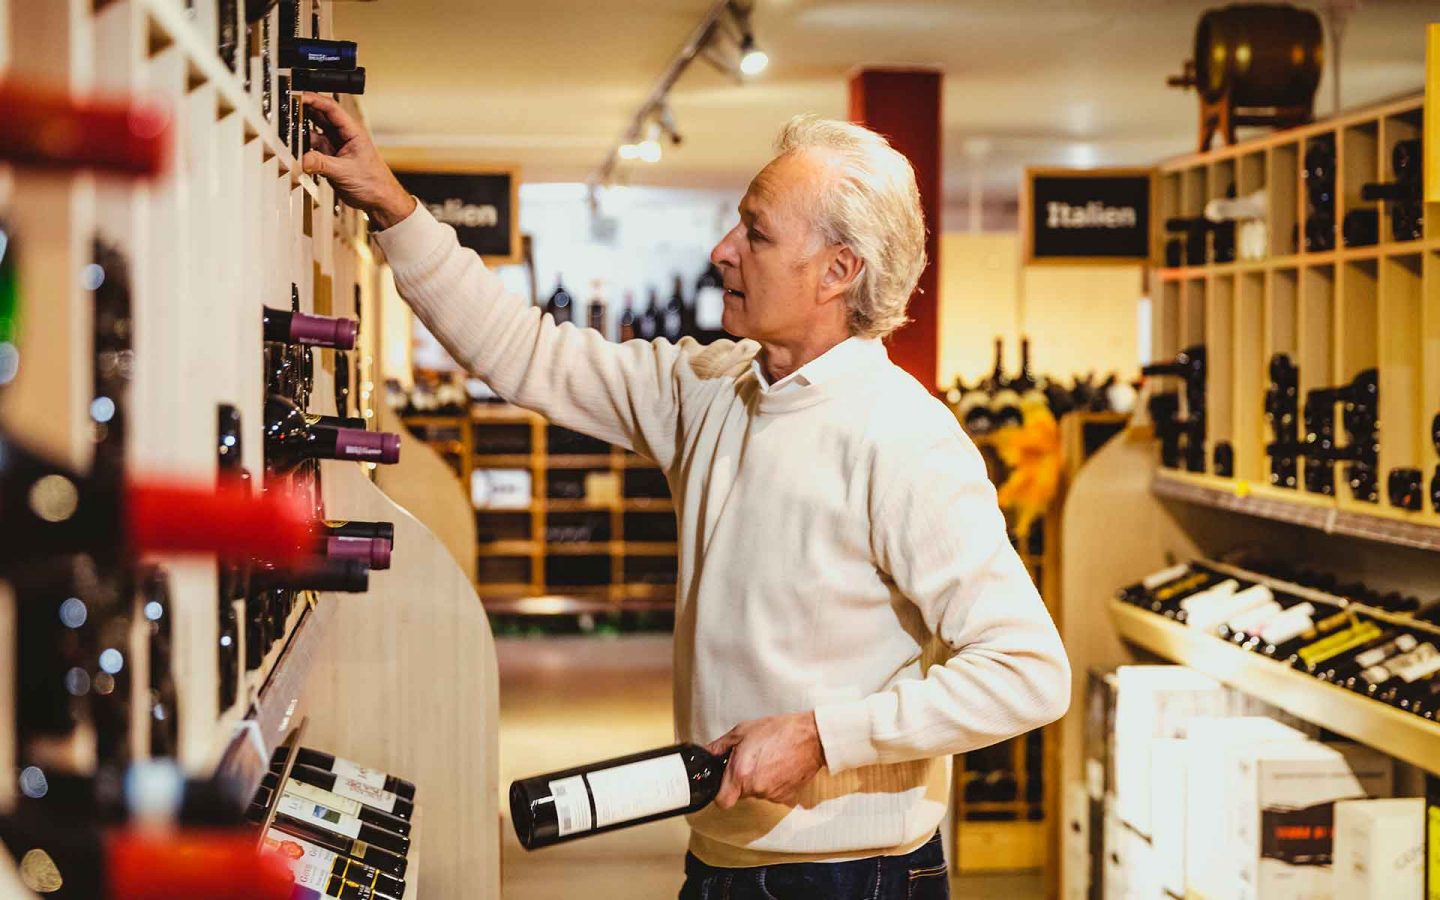 Roland Kaufmann en train de ranger les différentes bouteilles de vin.